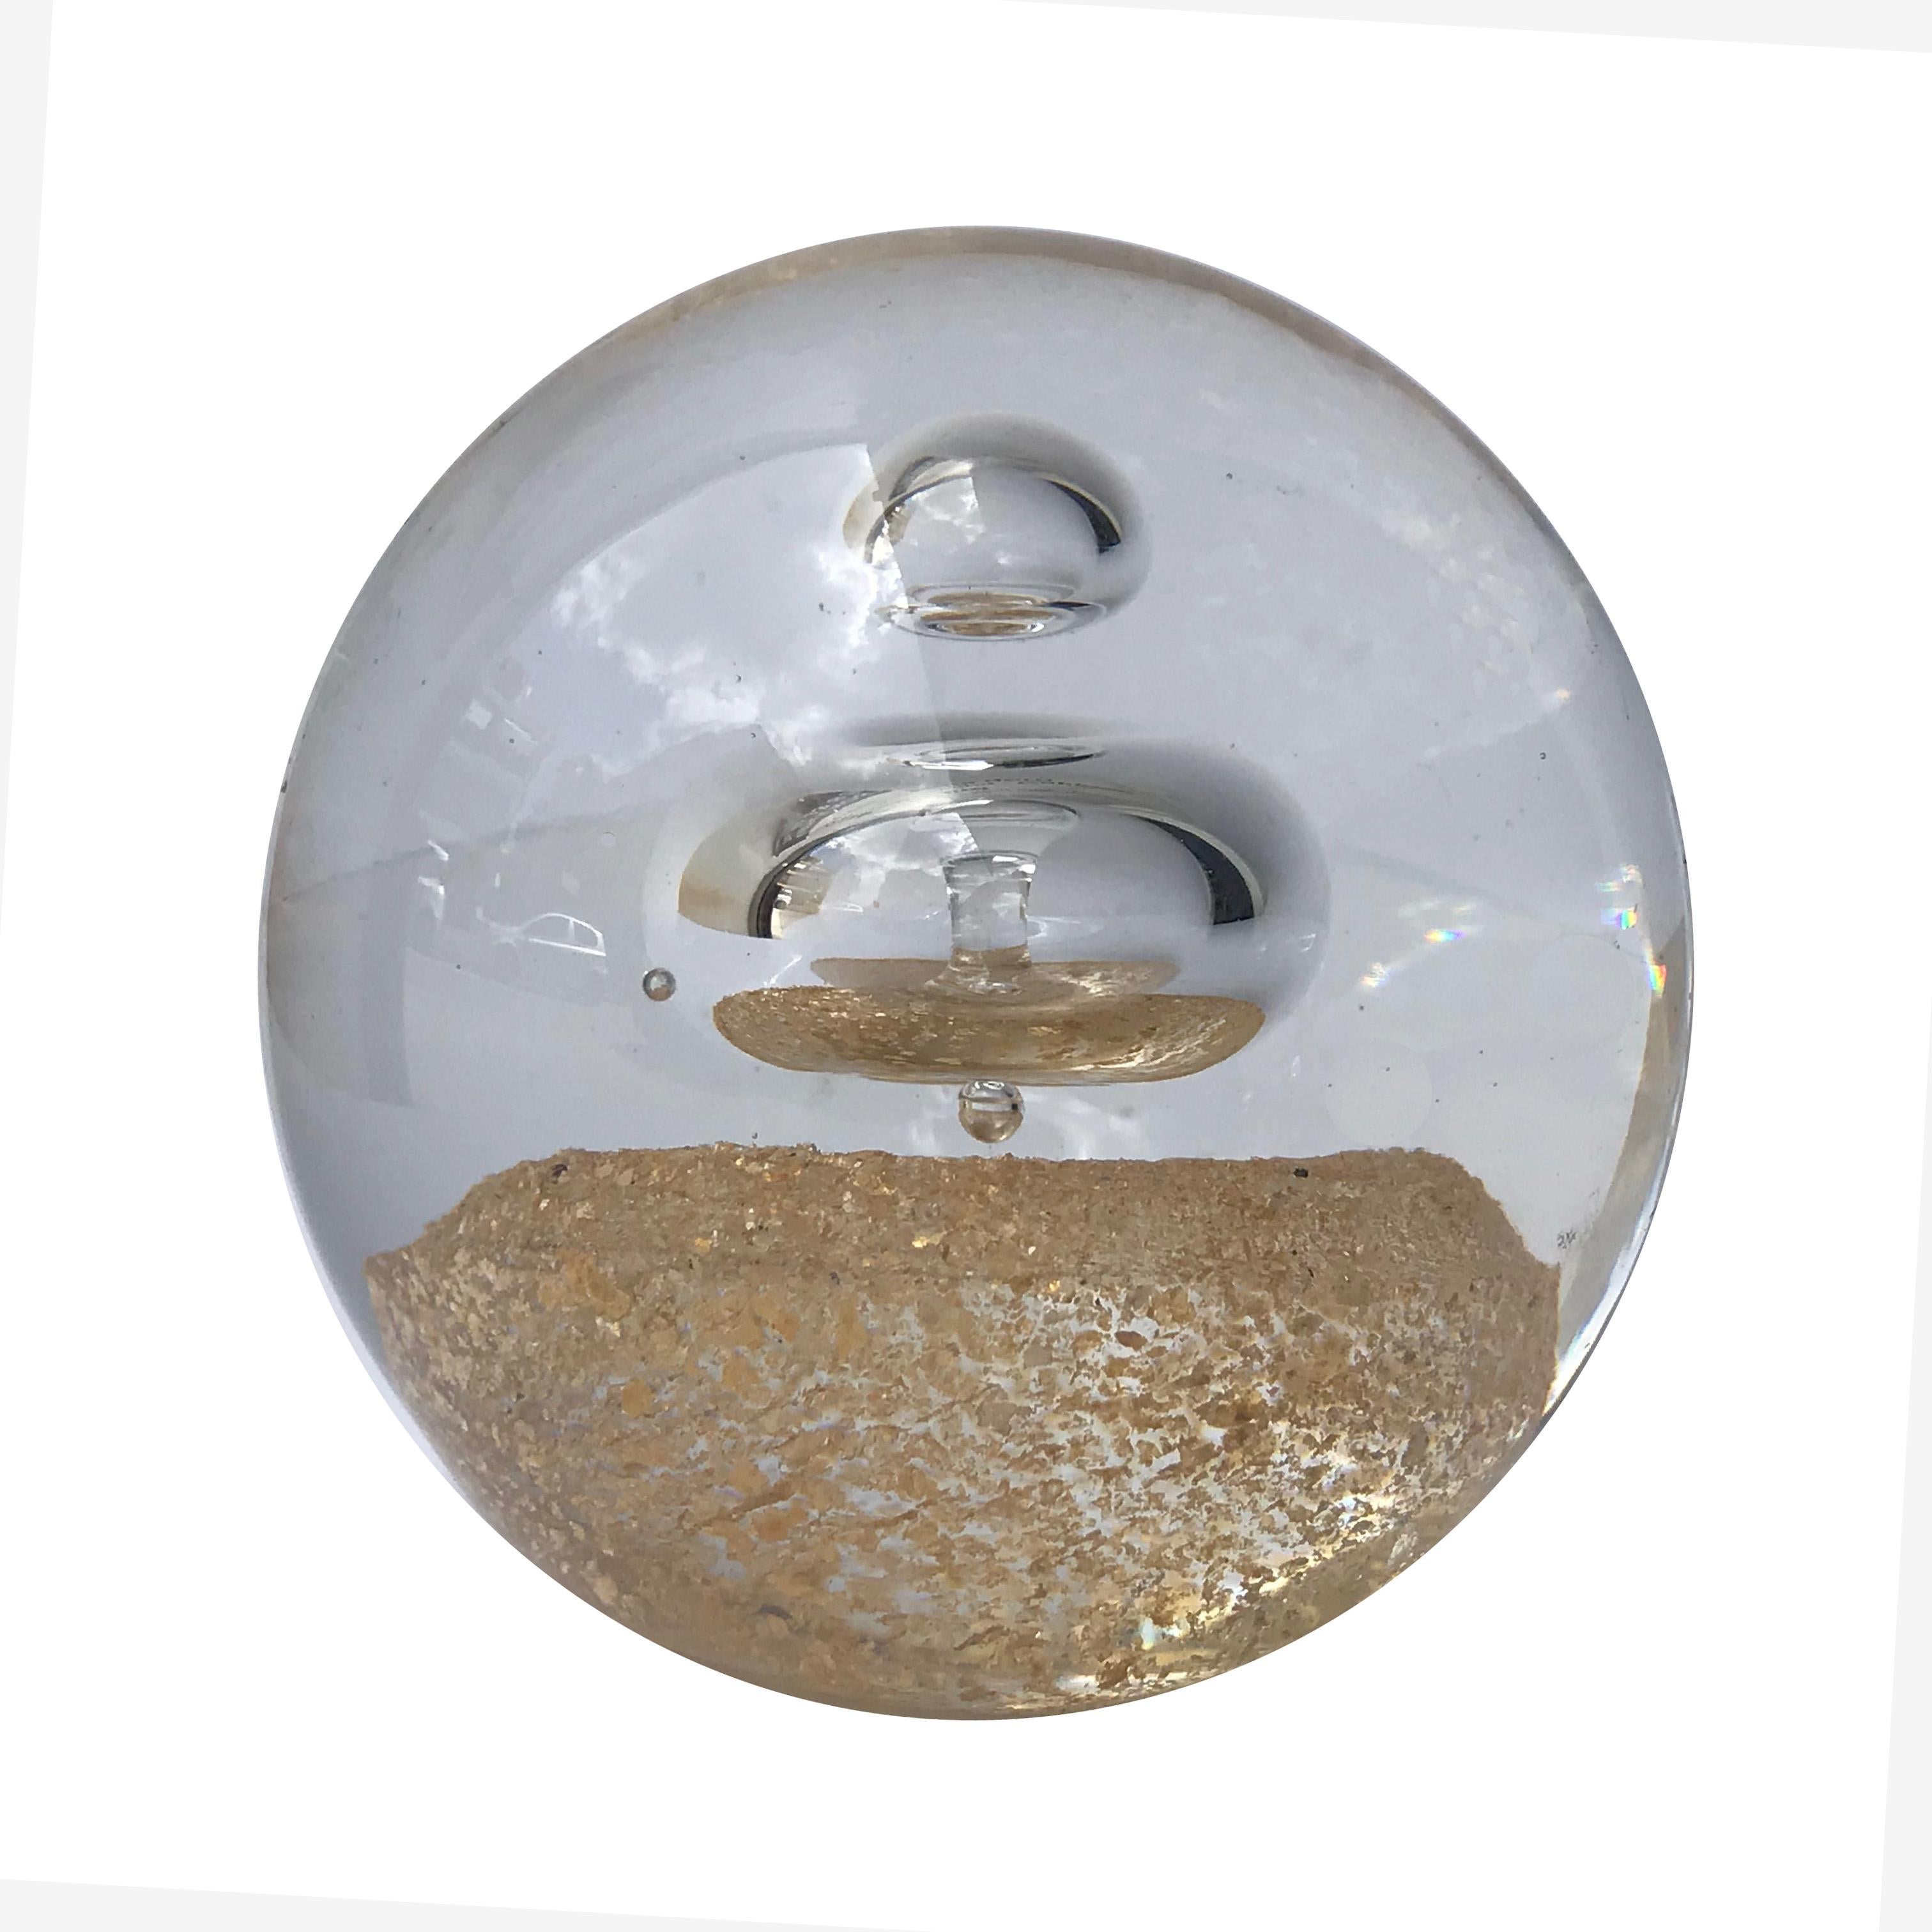 Schöner kugelförmiger Briefbeschwerer aus Murano-Glas und Goldstaub aus der Mitte des Jahrhunderts. Es wurde in den 1970er Jahren in Italien hergestellt und Alfredo Barbini zugeschrieben.

Seine Besonderheit ist die Innenkugel aus Murano-Glas, die